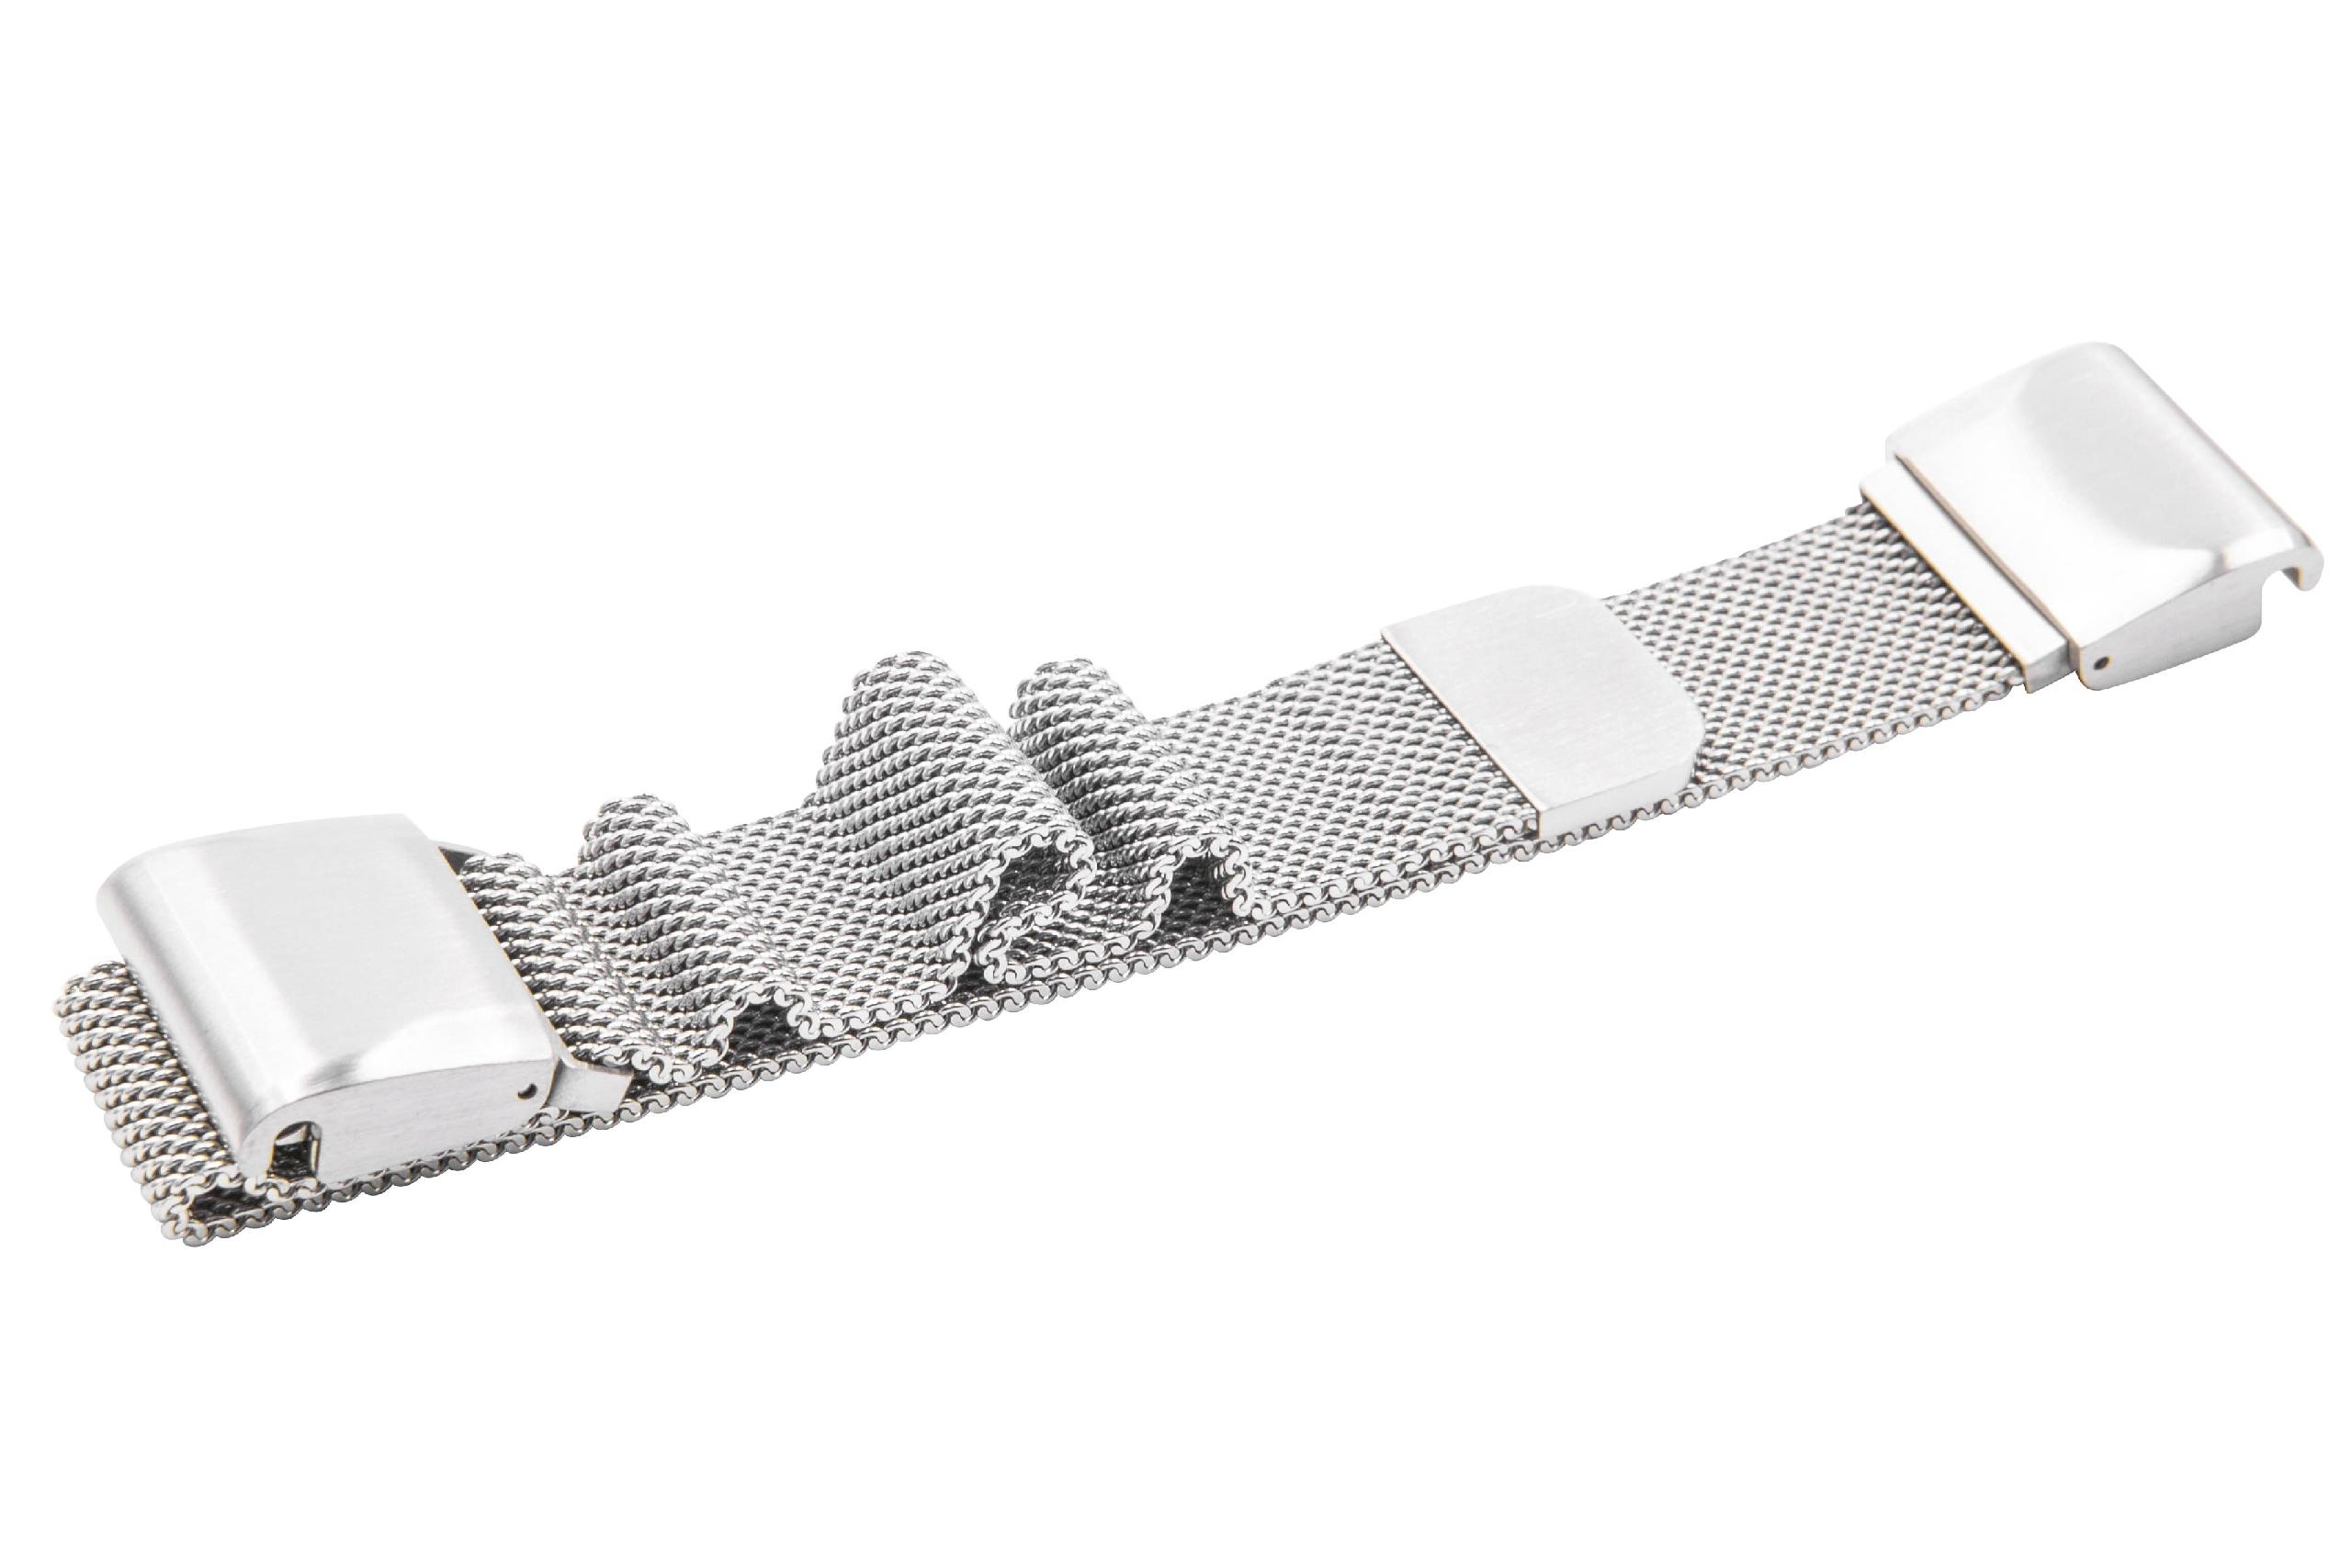 Pasek do smartwatch Garmin Fenix - obwód nadgarstka do 248 mm , stal nierdzewna, srebrny